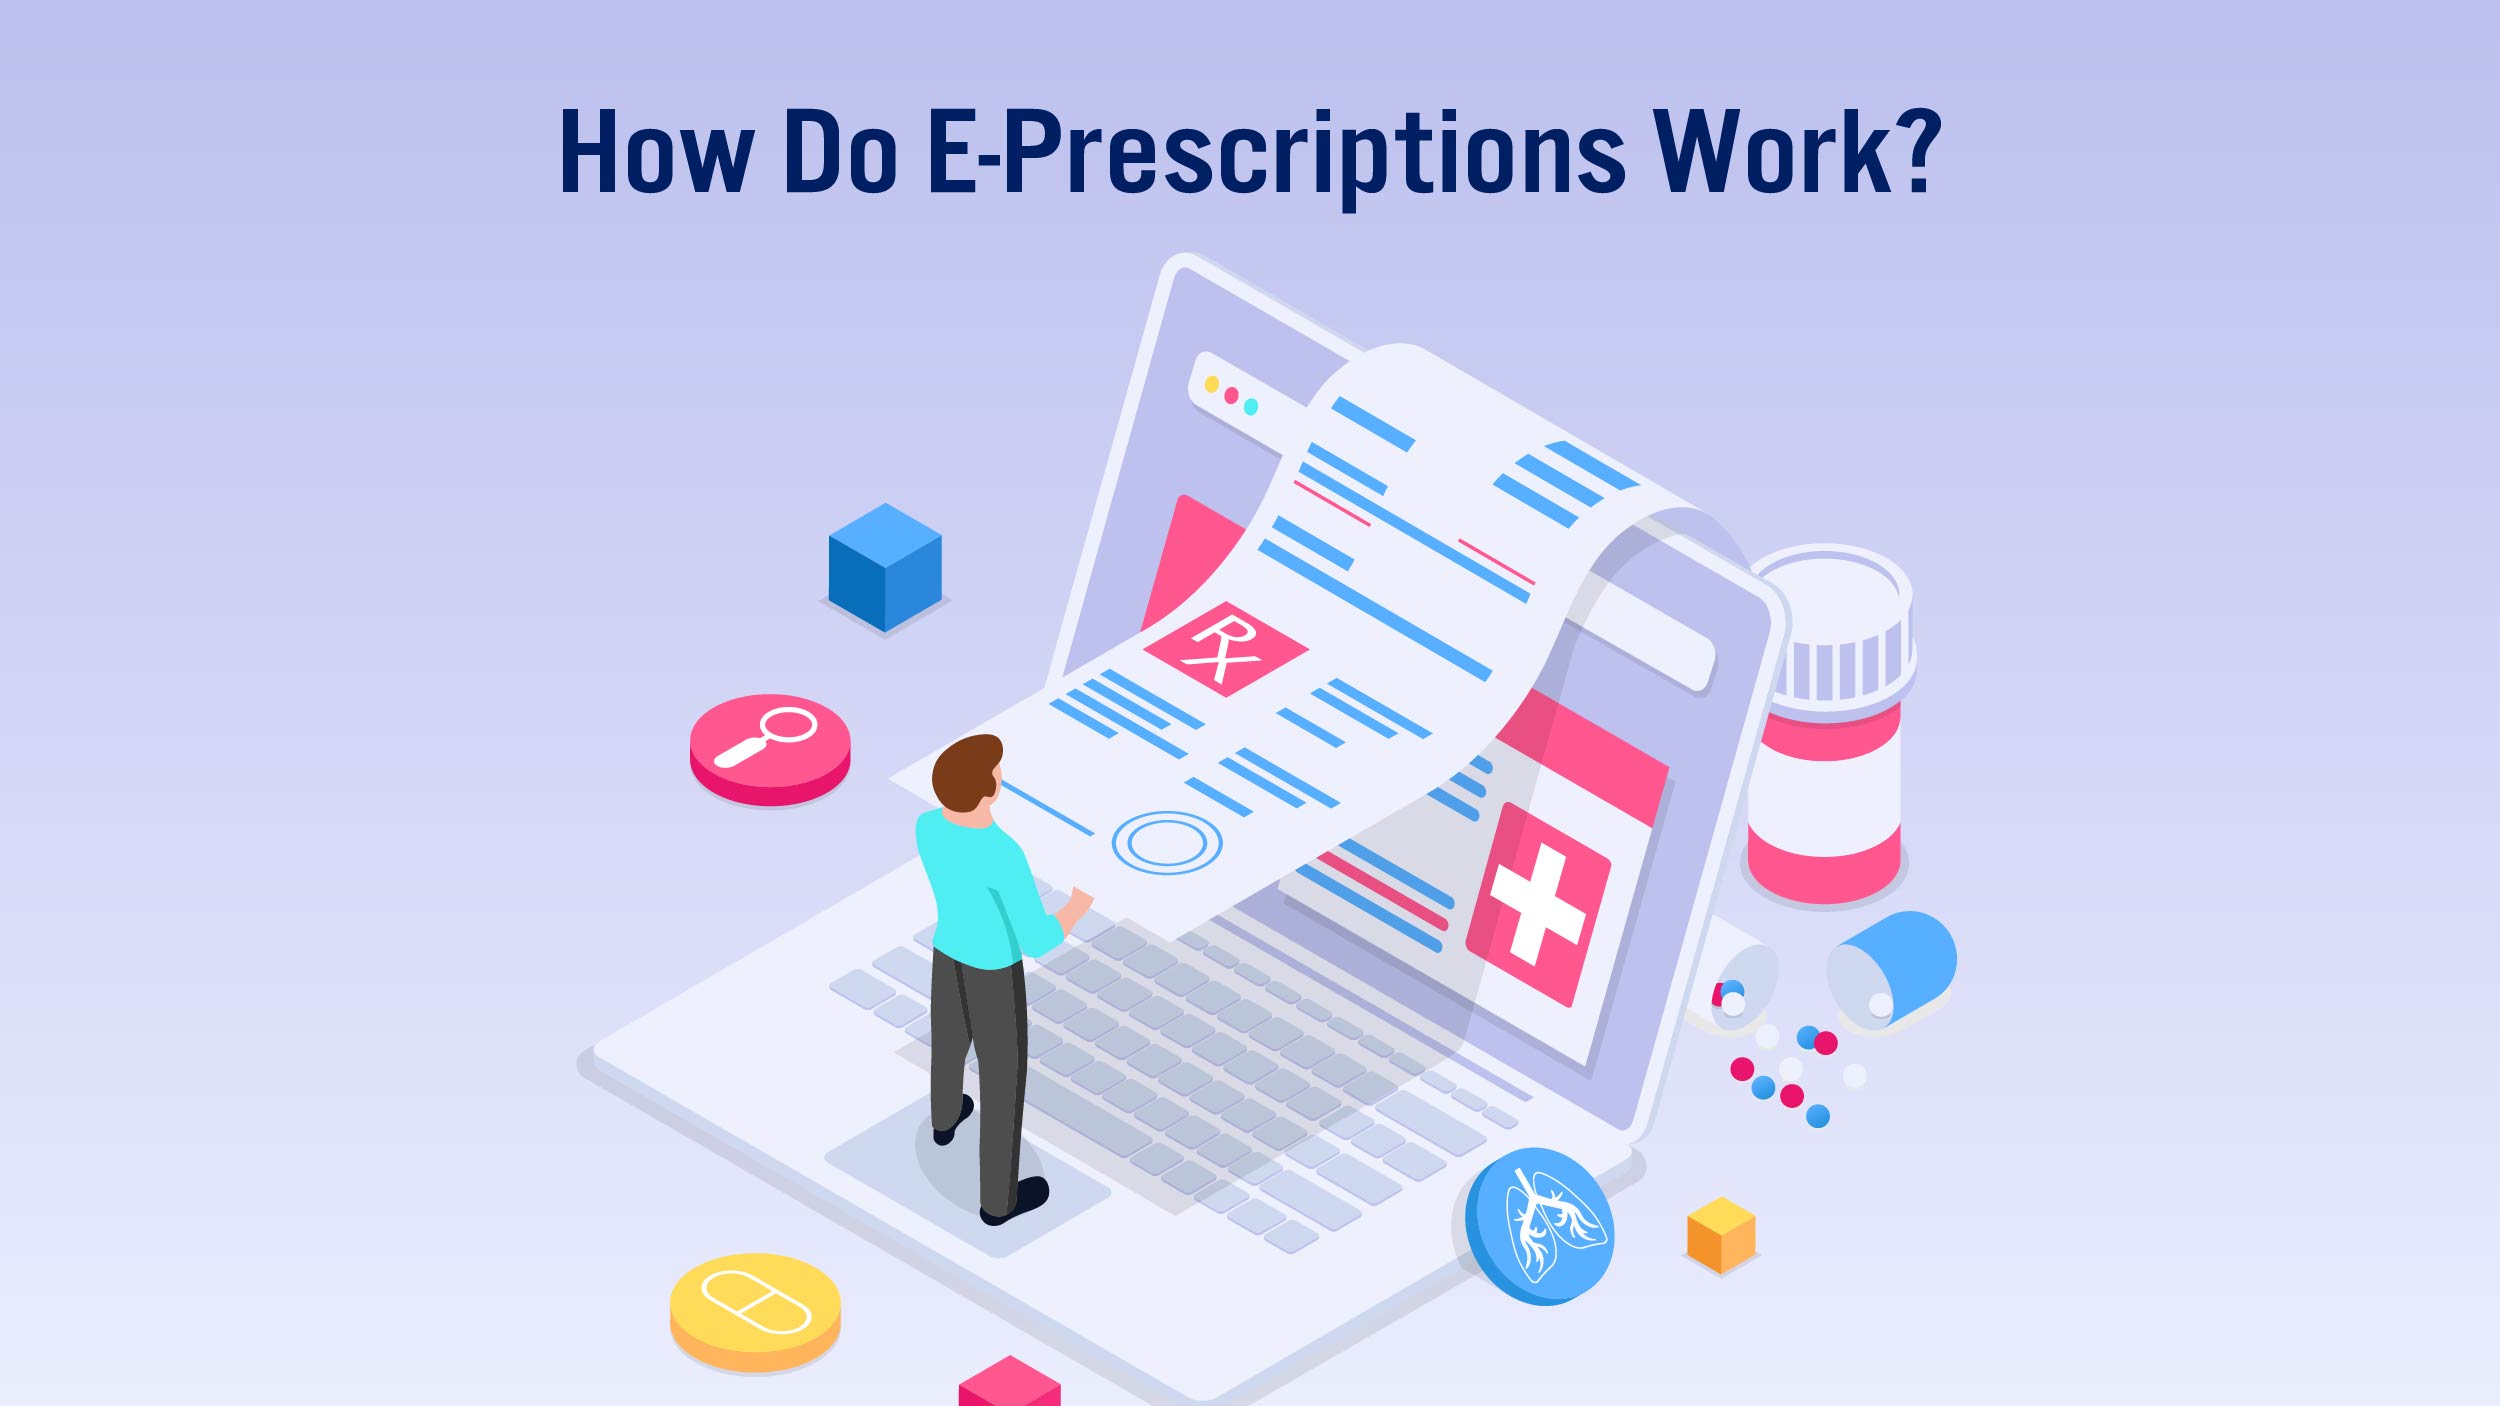 E-Prescriptions